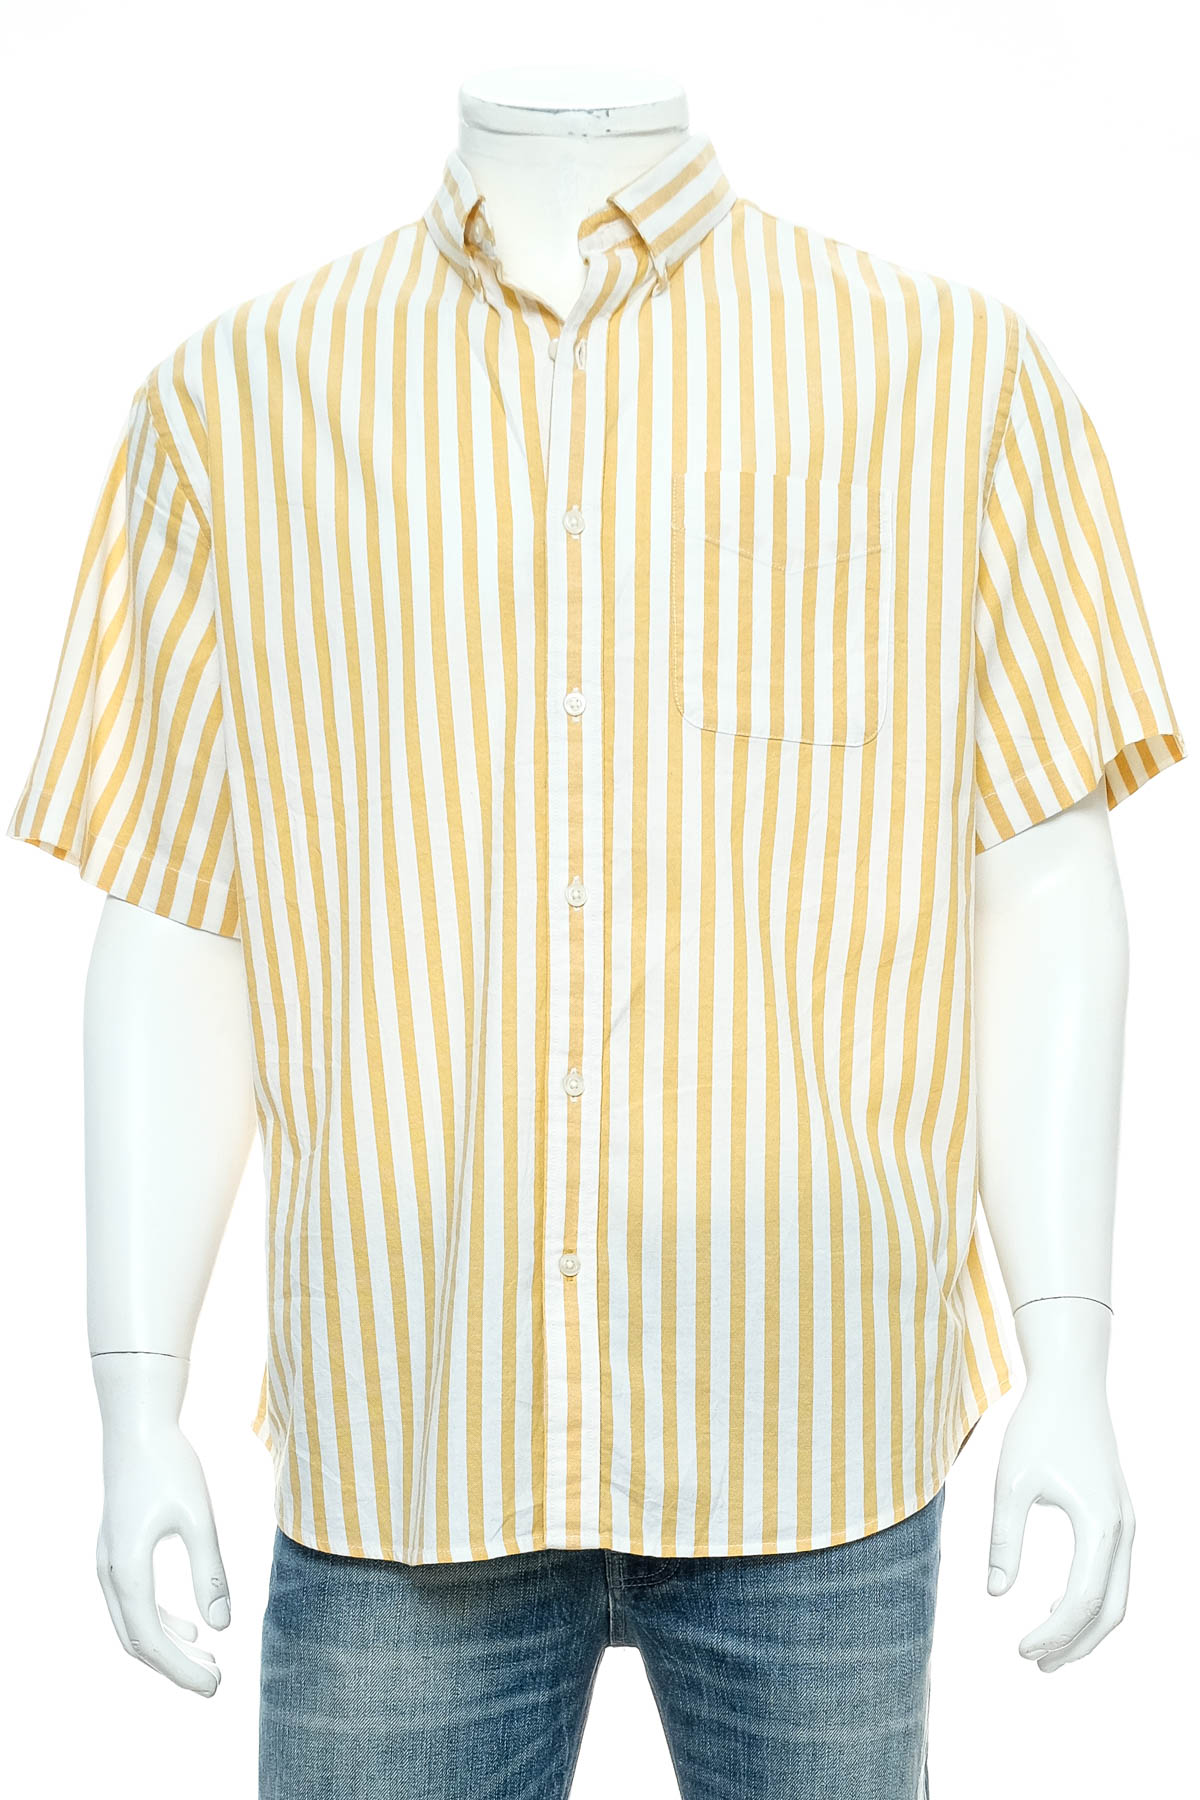 Ανδρικό πουκάμισο - OLD NAVY - 0